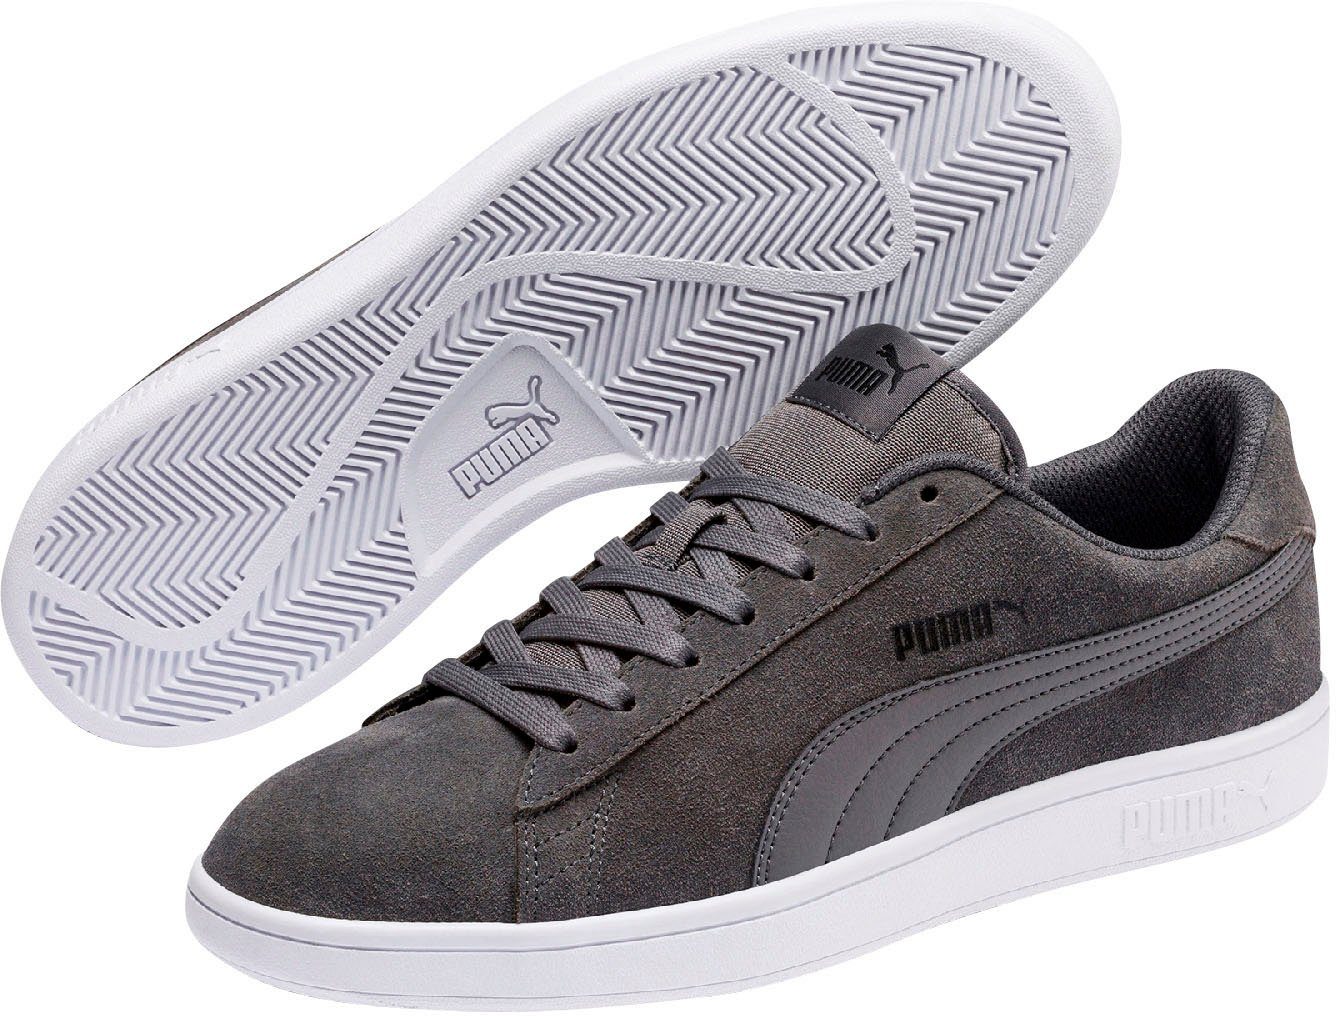 PUMA Smash v2 Sneaker online kaufen | OTTO